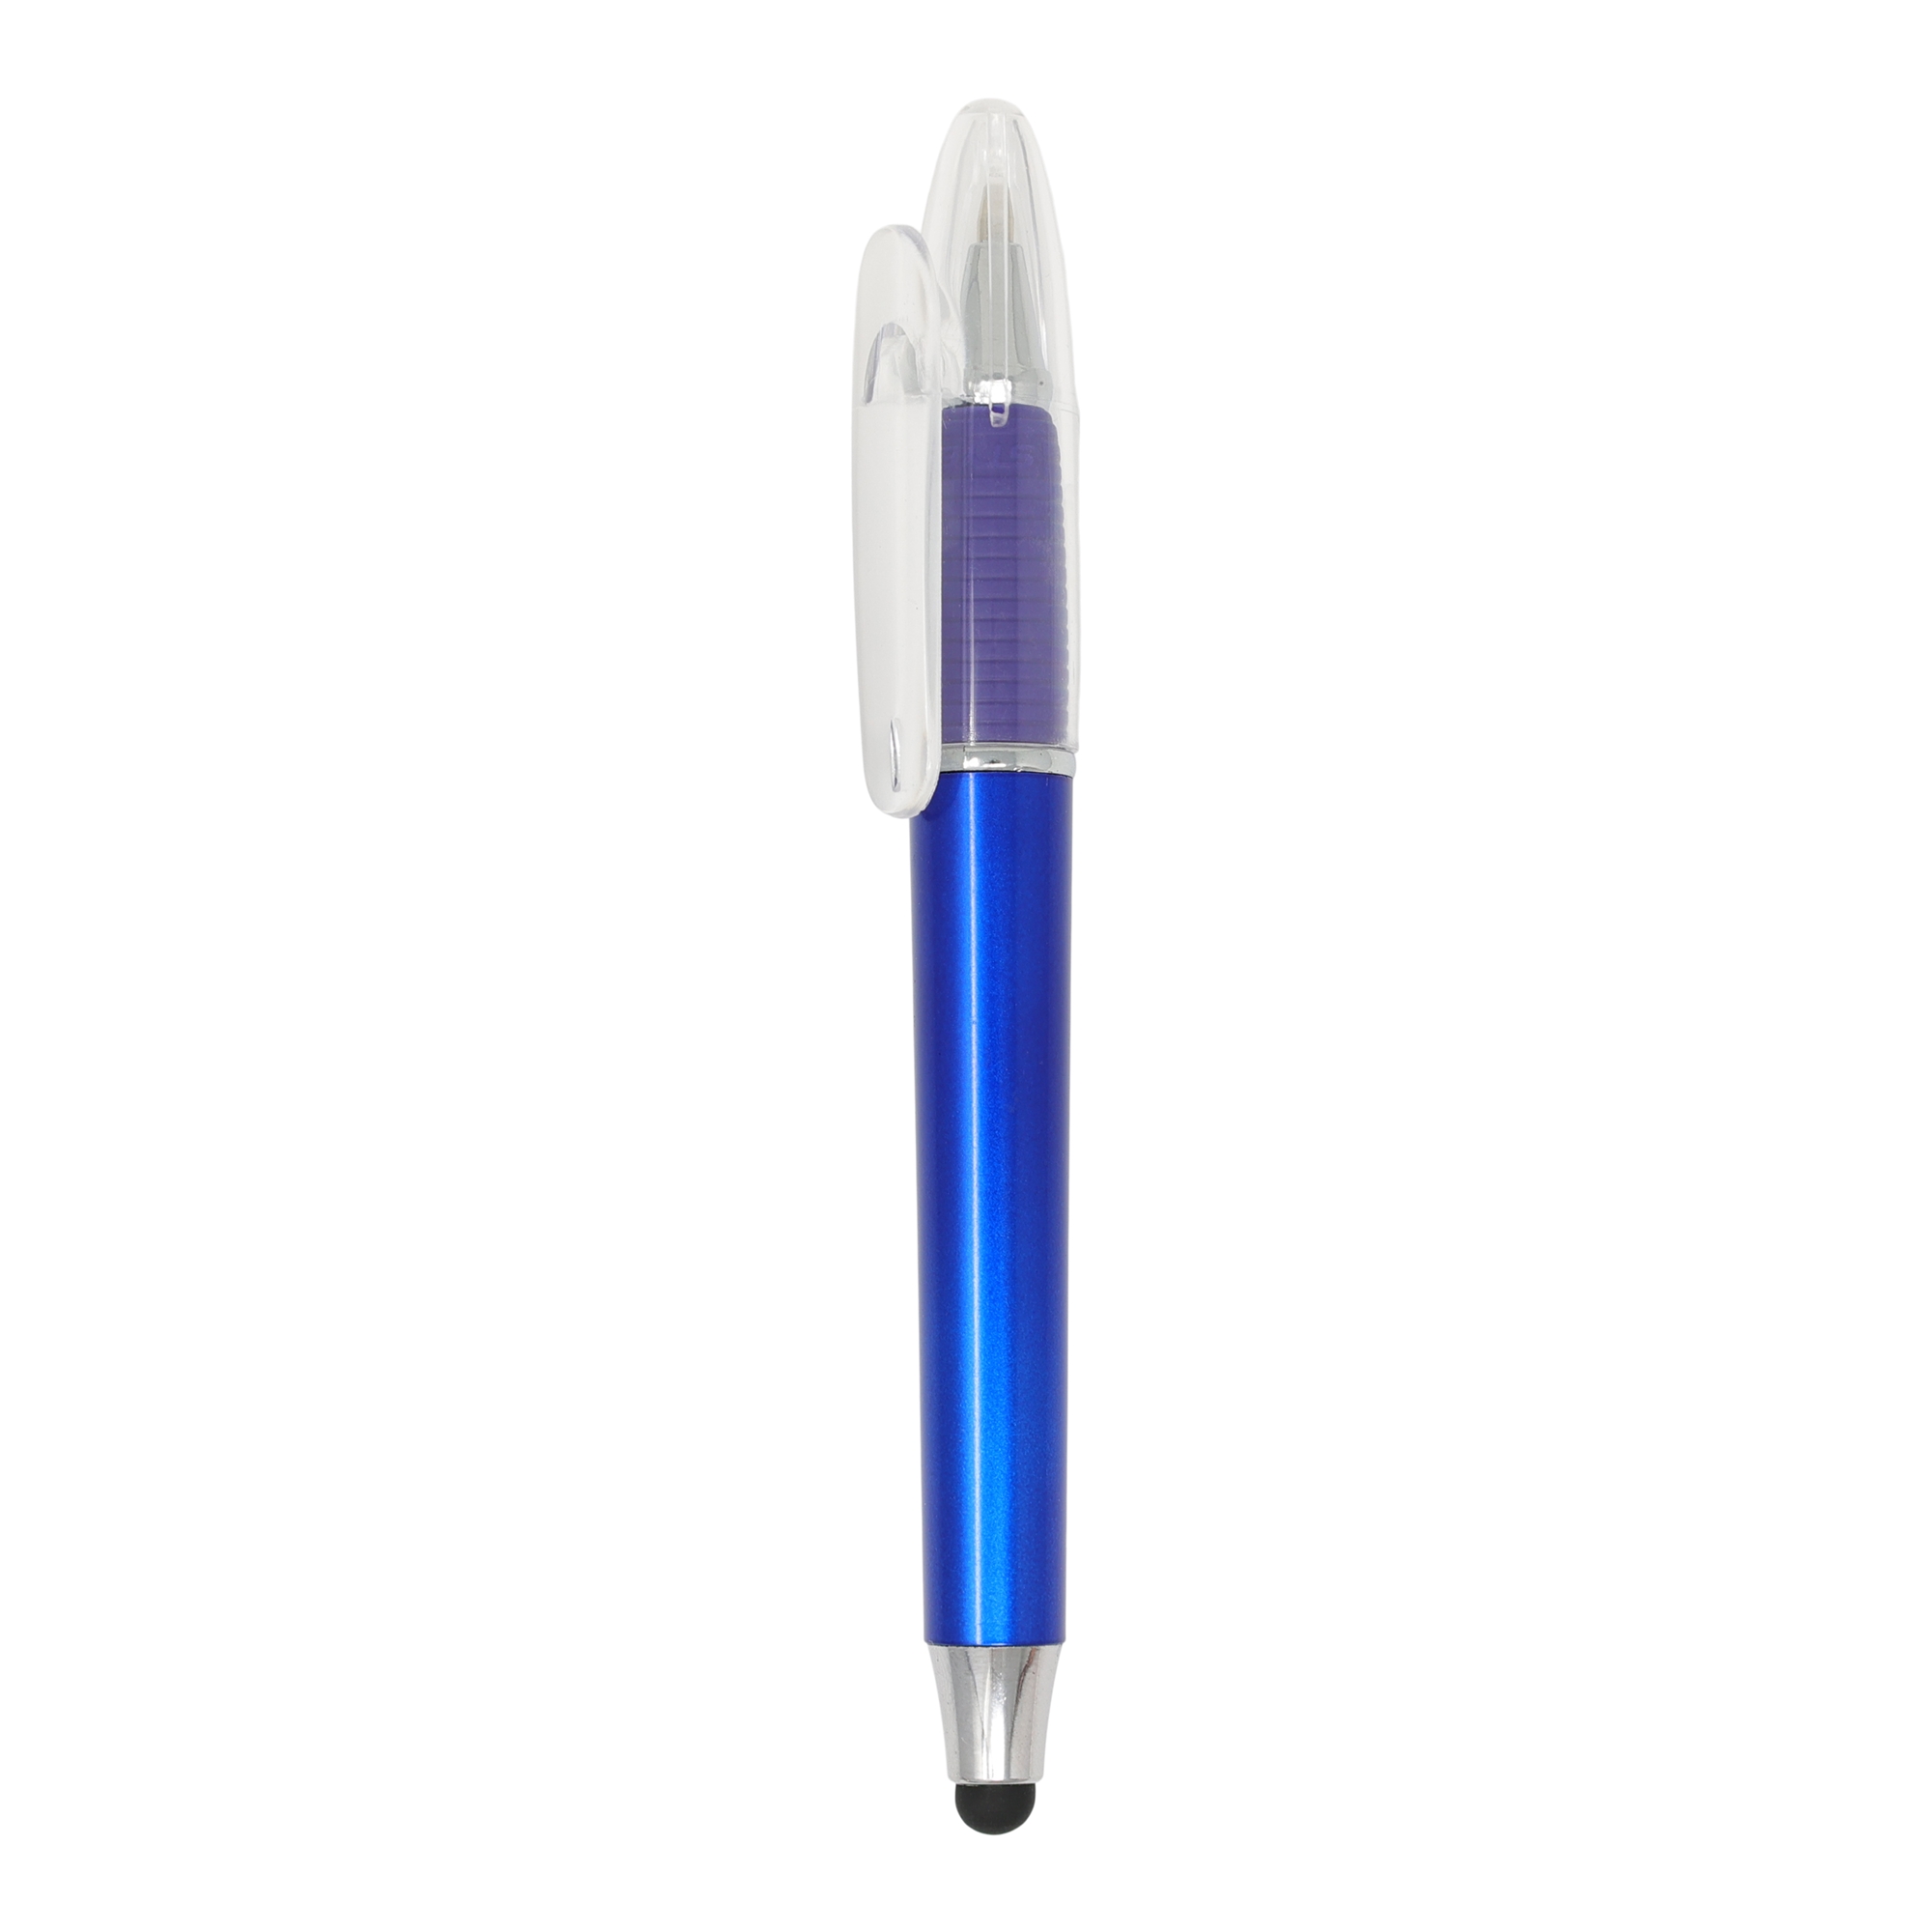 Bolígrafo con puntero Dolphin Stylus
Color azul y plateado